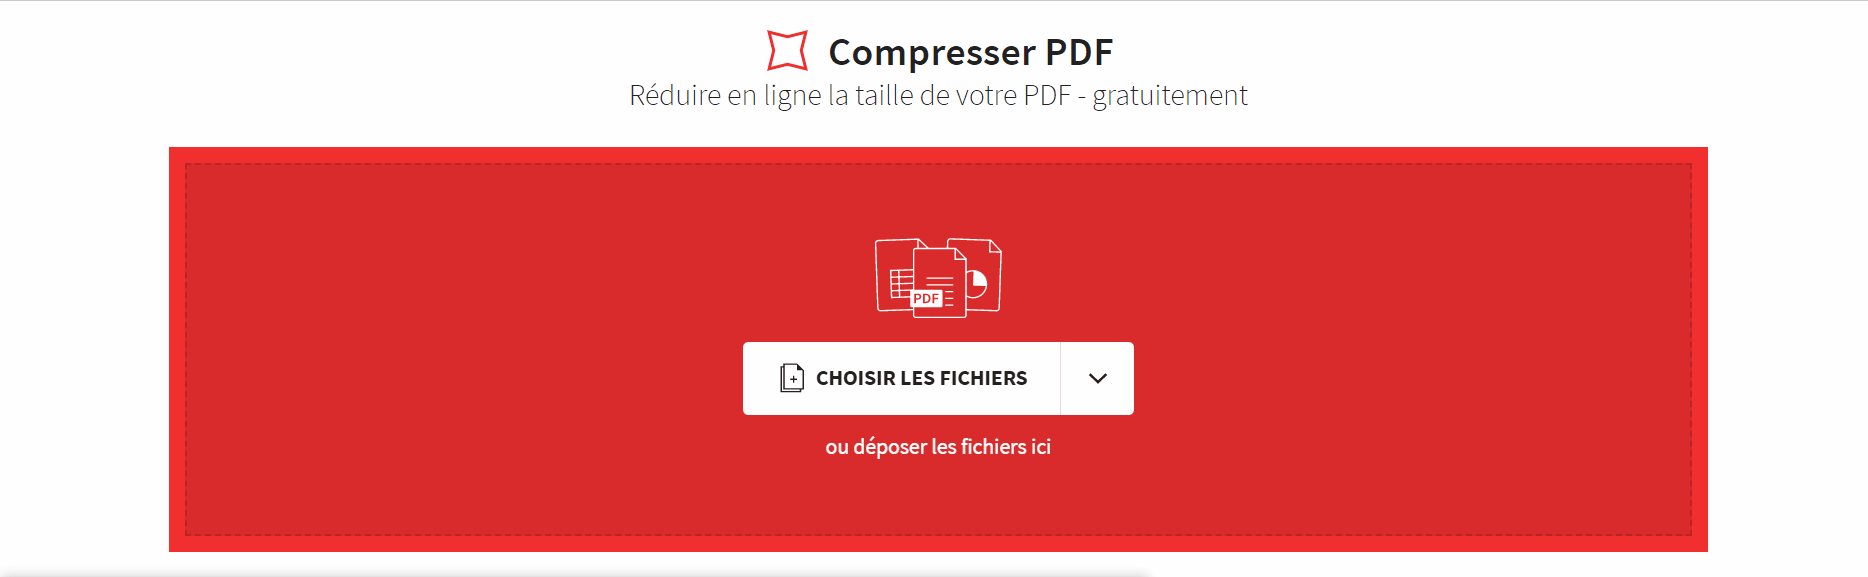 2020-03-15 - Compresser des fichiers Word en ligne - outils Compresser PDF et PDF en Word